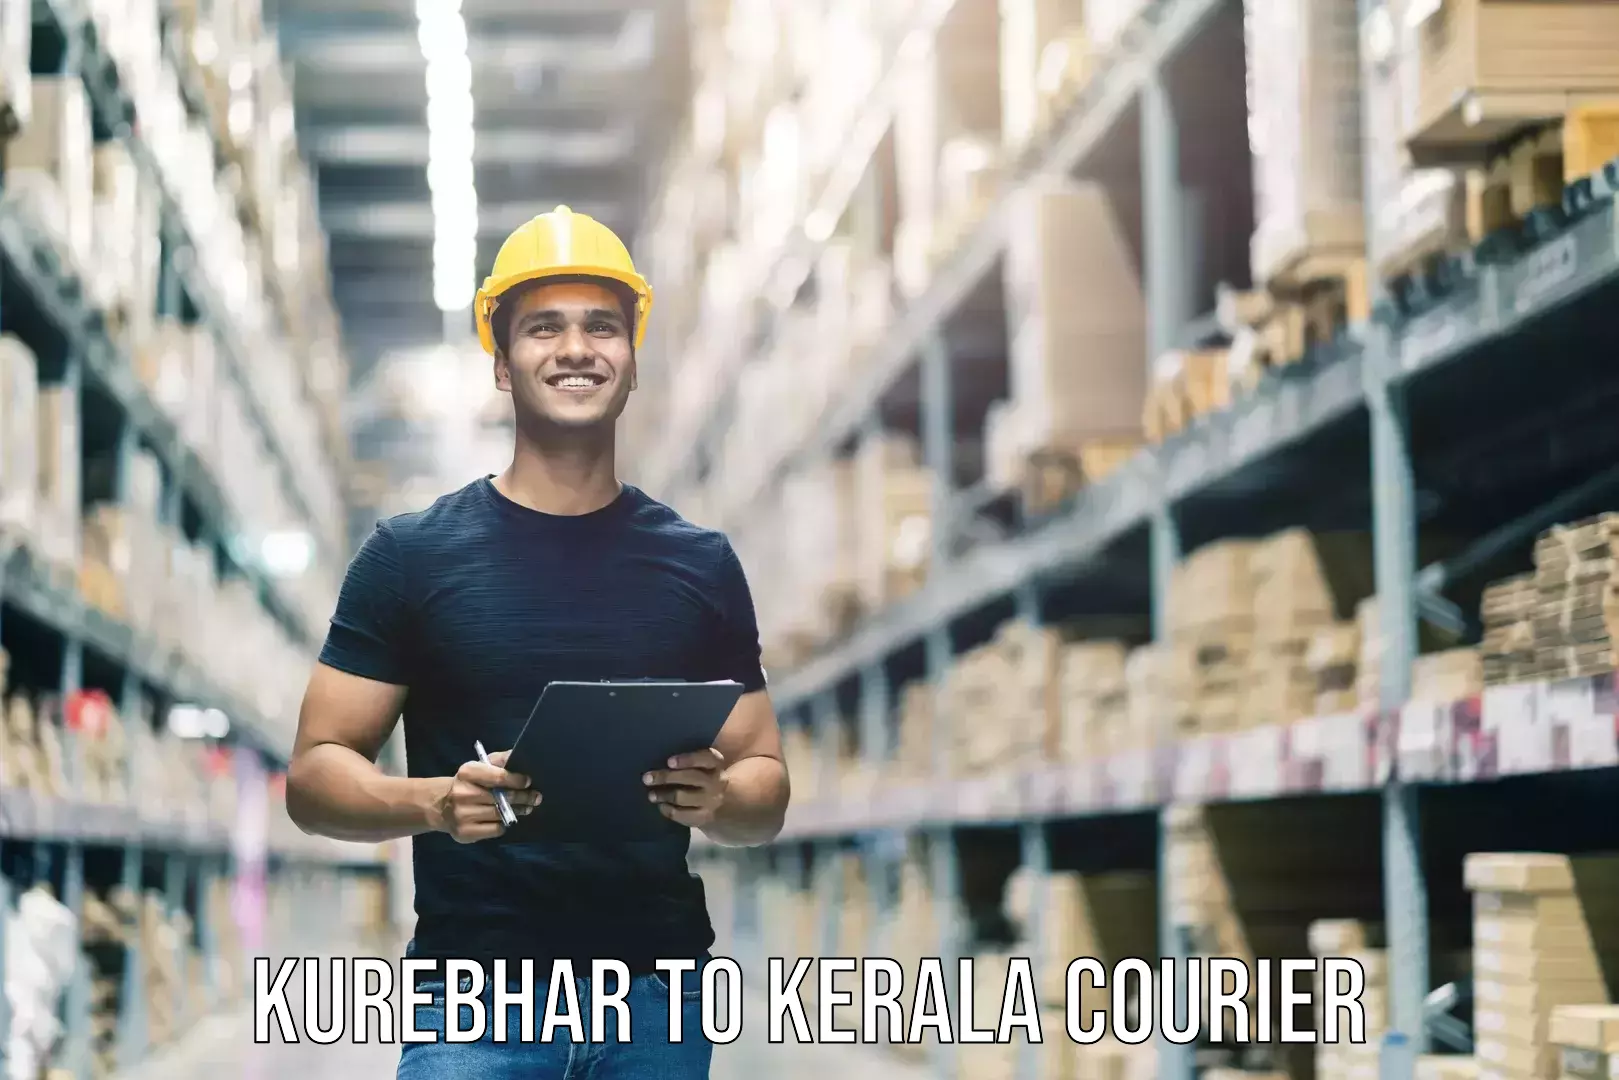 Baggage transport technology Kurebhar to Kerala